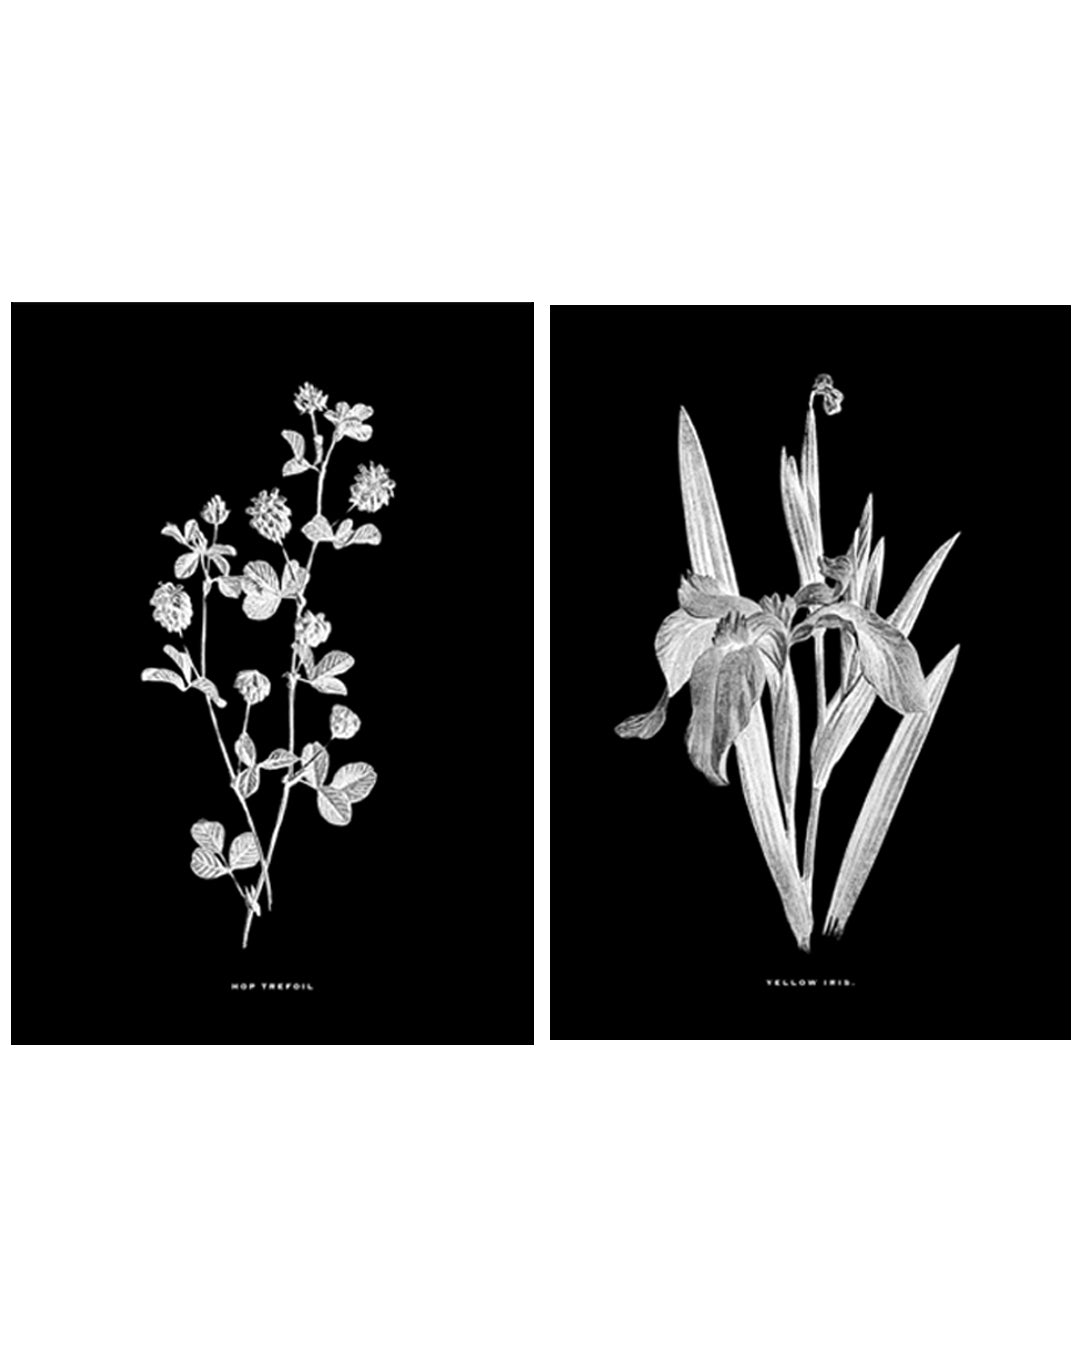 Black & White Framed Vintage Botanical Floral Art Prints: Set Of Two